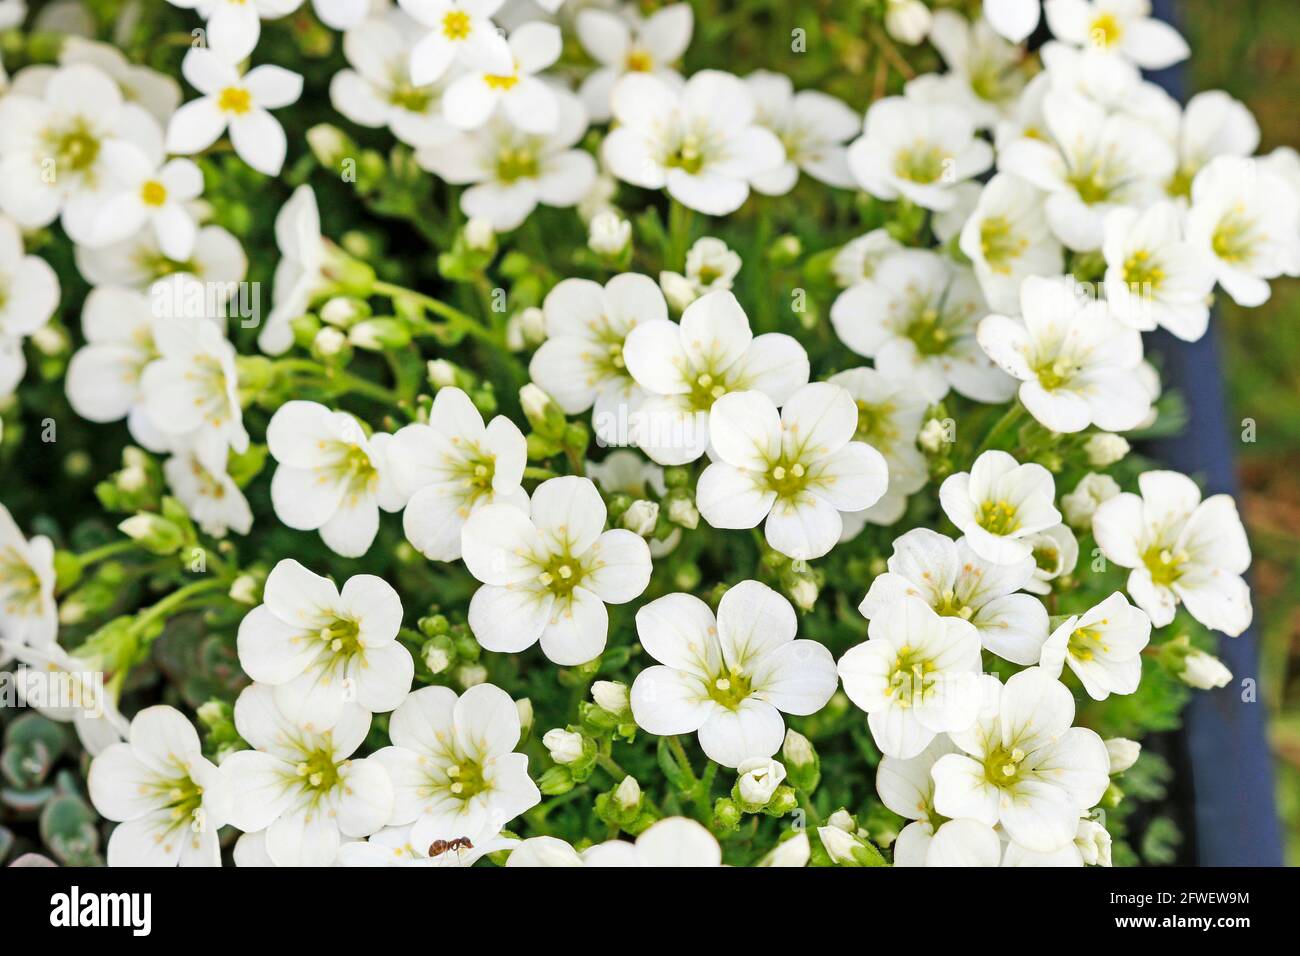 Saxifraga arendsii (Schneeteppich) flowers in the garden. Stock Photo